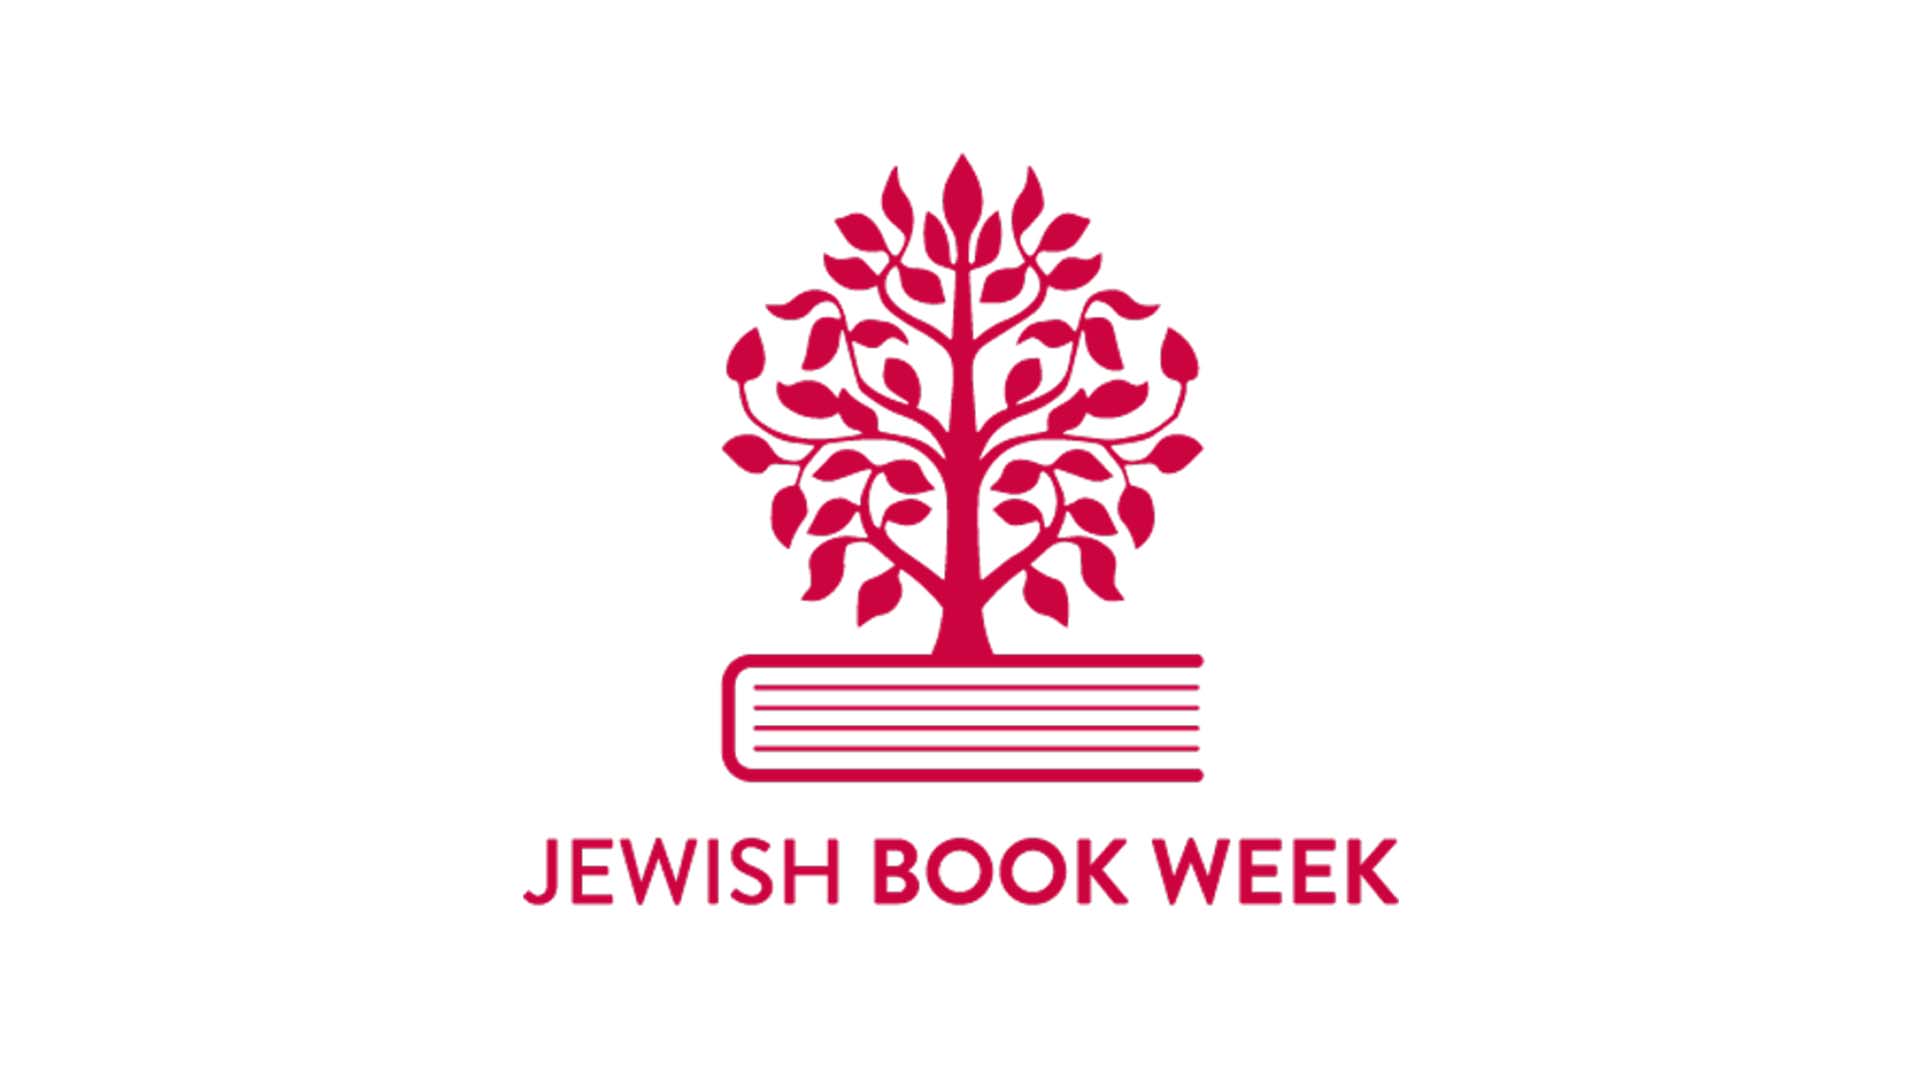 Jewish Book Week website